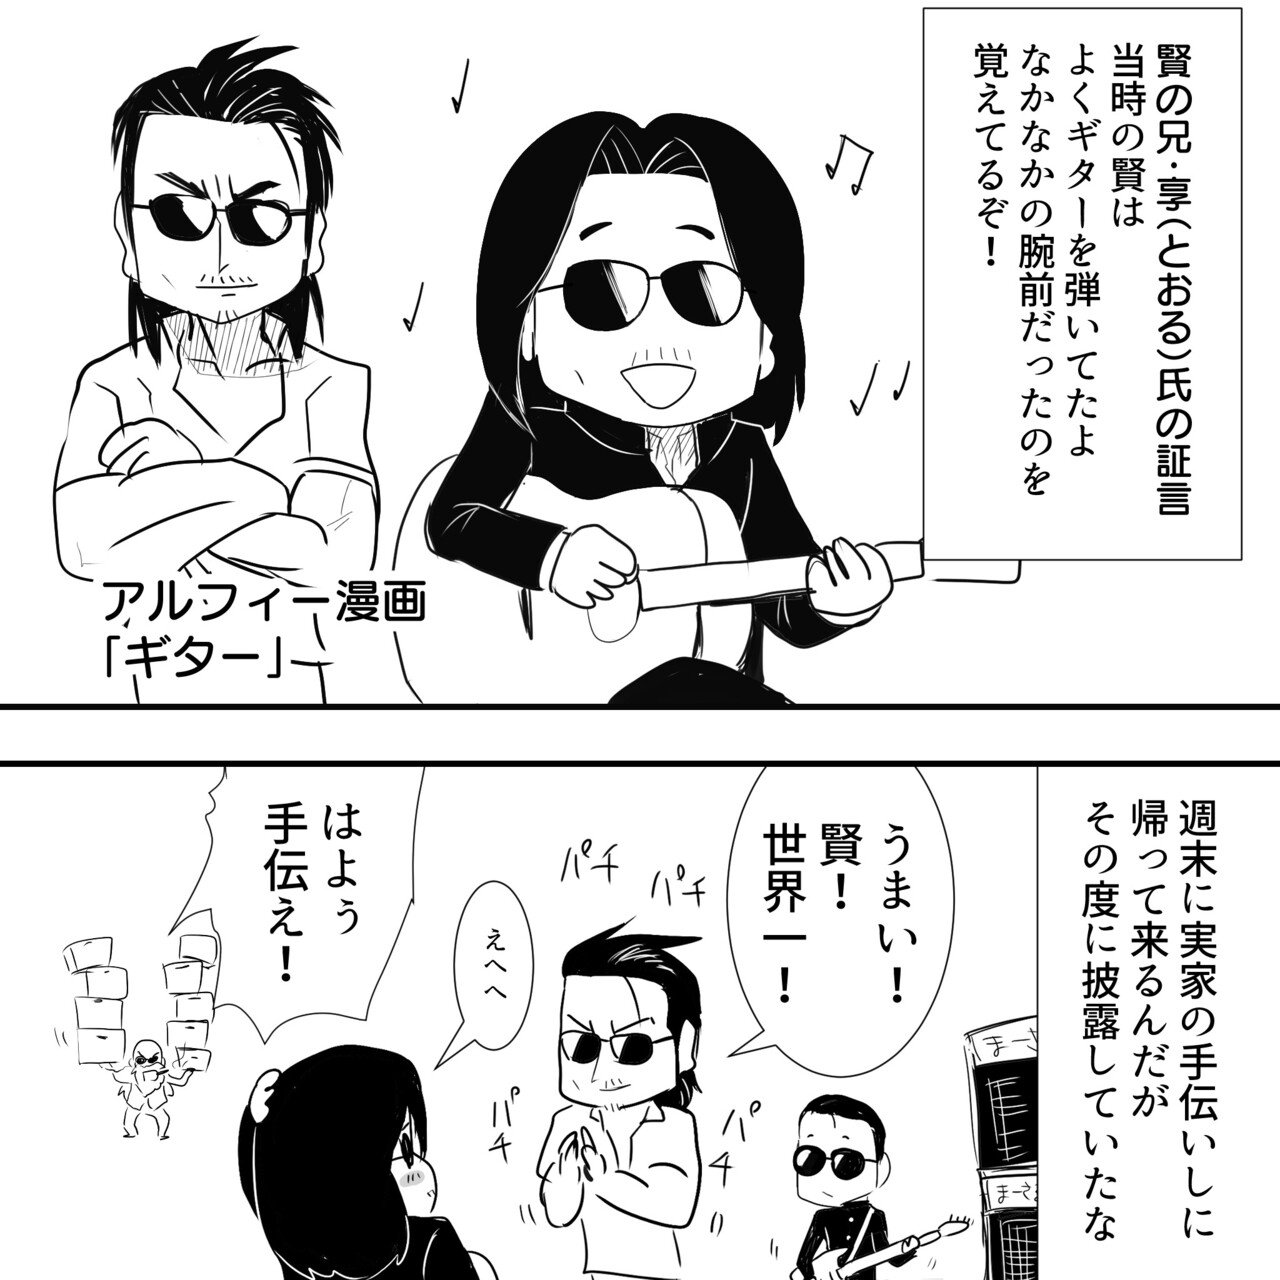 ベースのTHEALFEE桜井賢さんがギターをそっと置いた本当の理由の考察